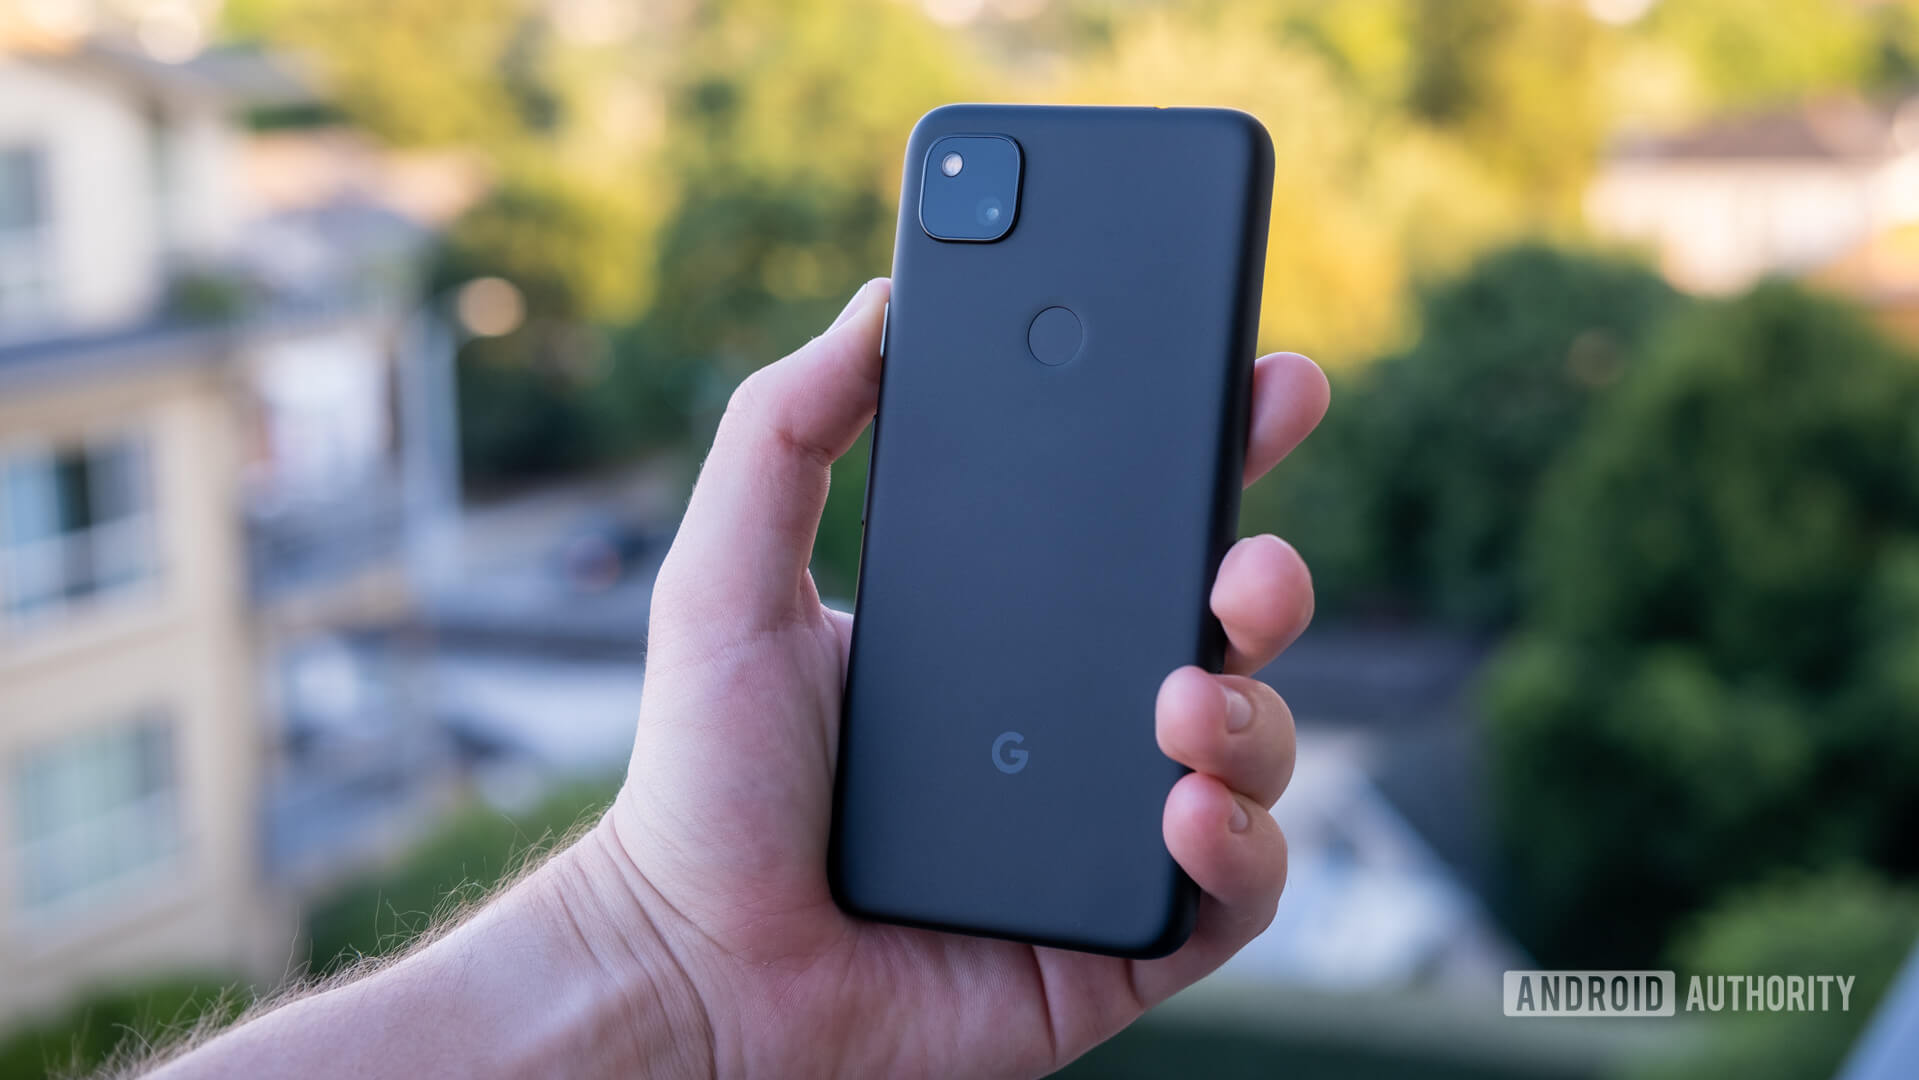 Google Pixel 4a chính thức ra mắt với màn hình
đục lỗ, chip Snapdragon 730G, giá 349 USD